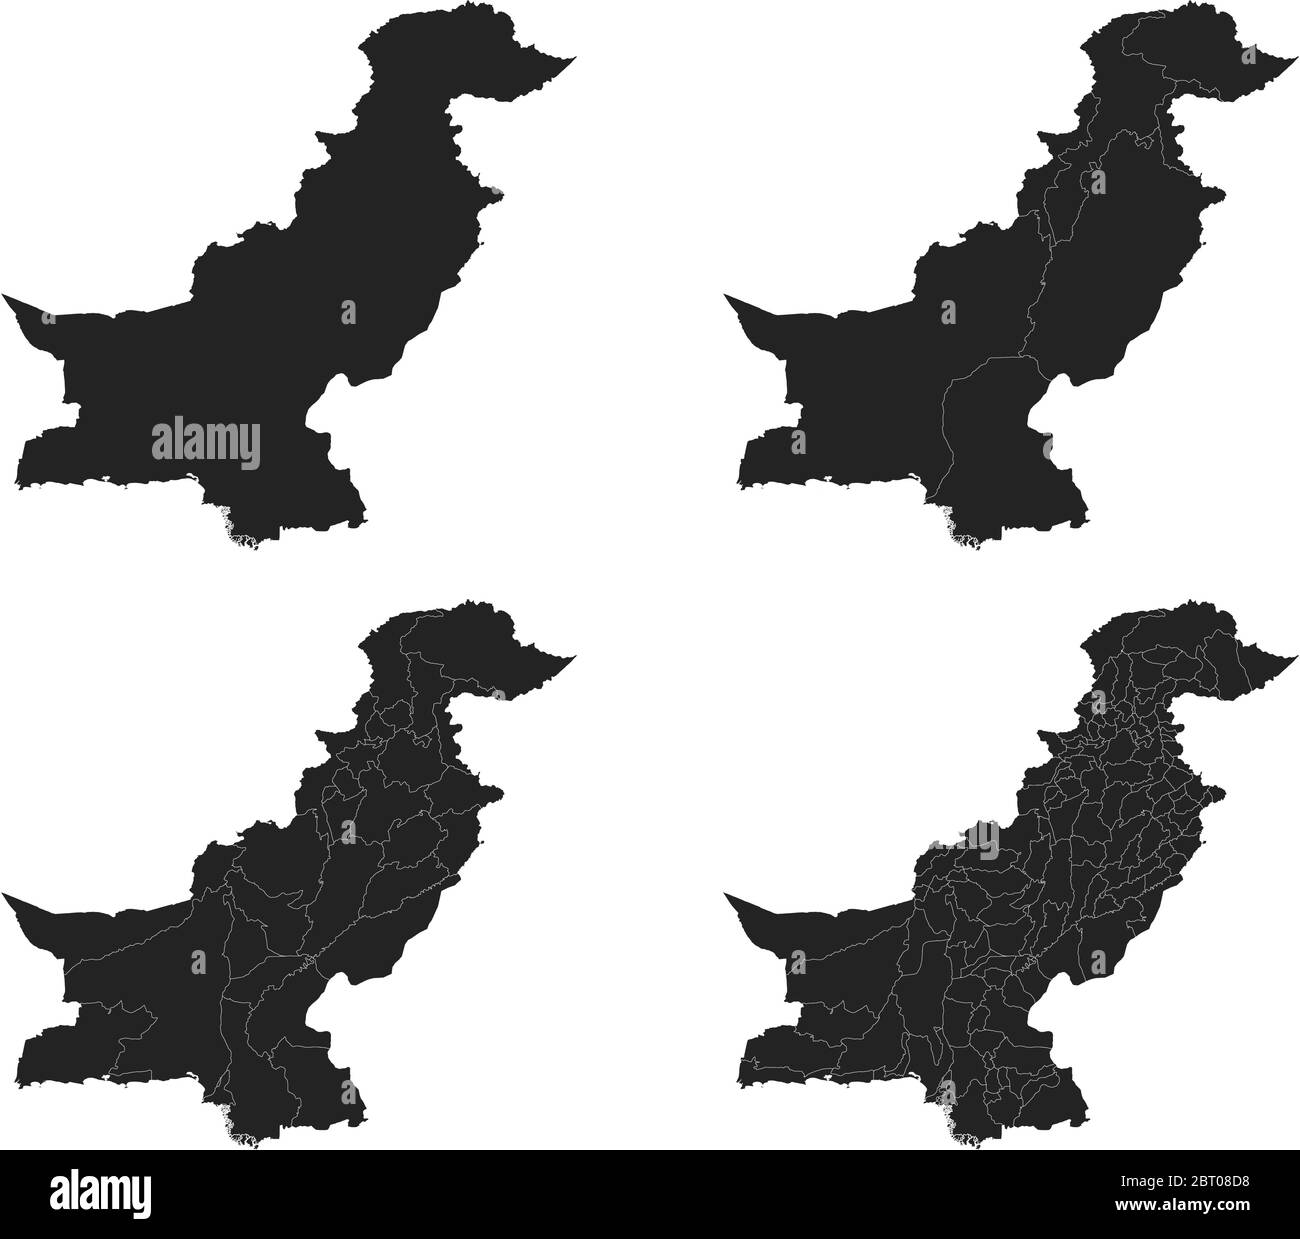 Cartes vectorielles du Pakistan avec régions administratives, municipalités, départements, frontières Illustration de Vecteur